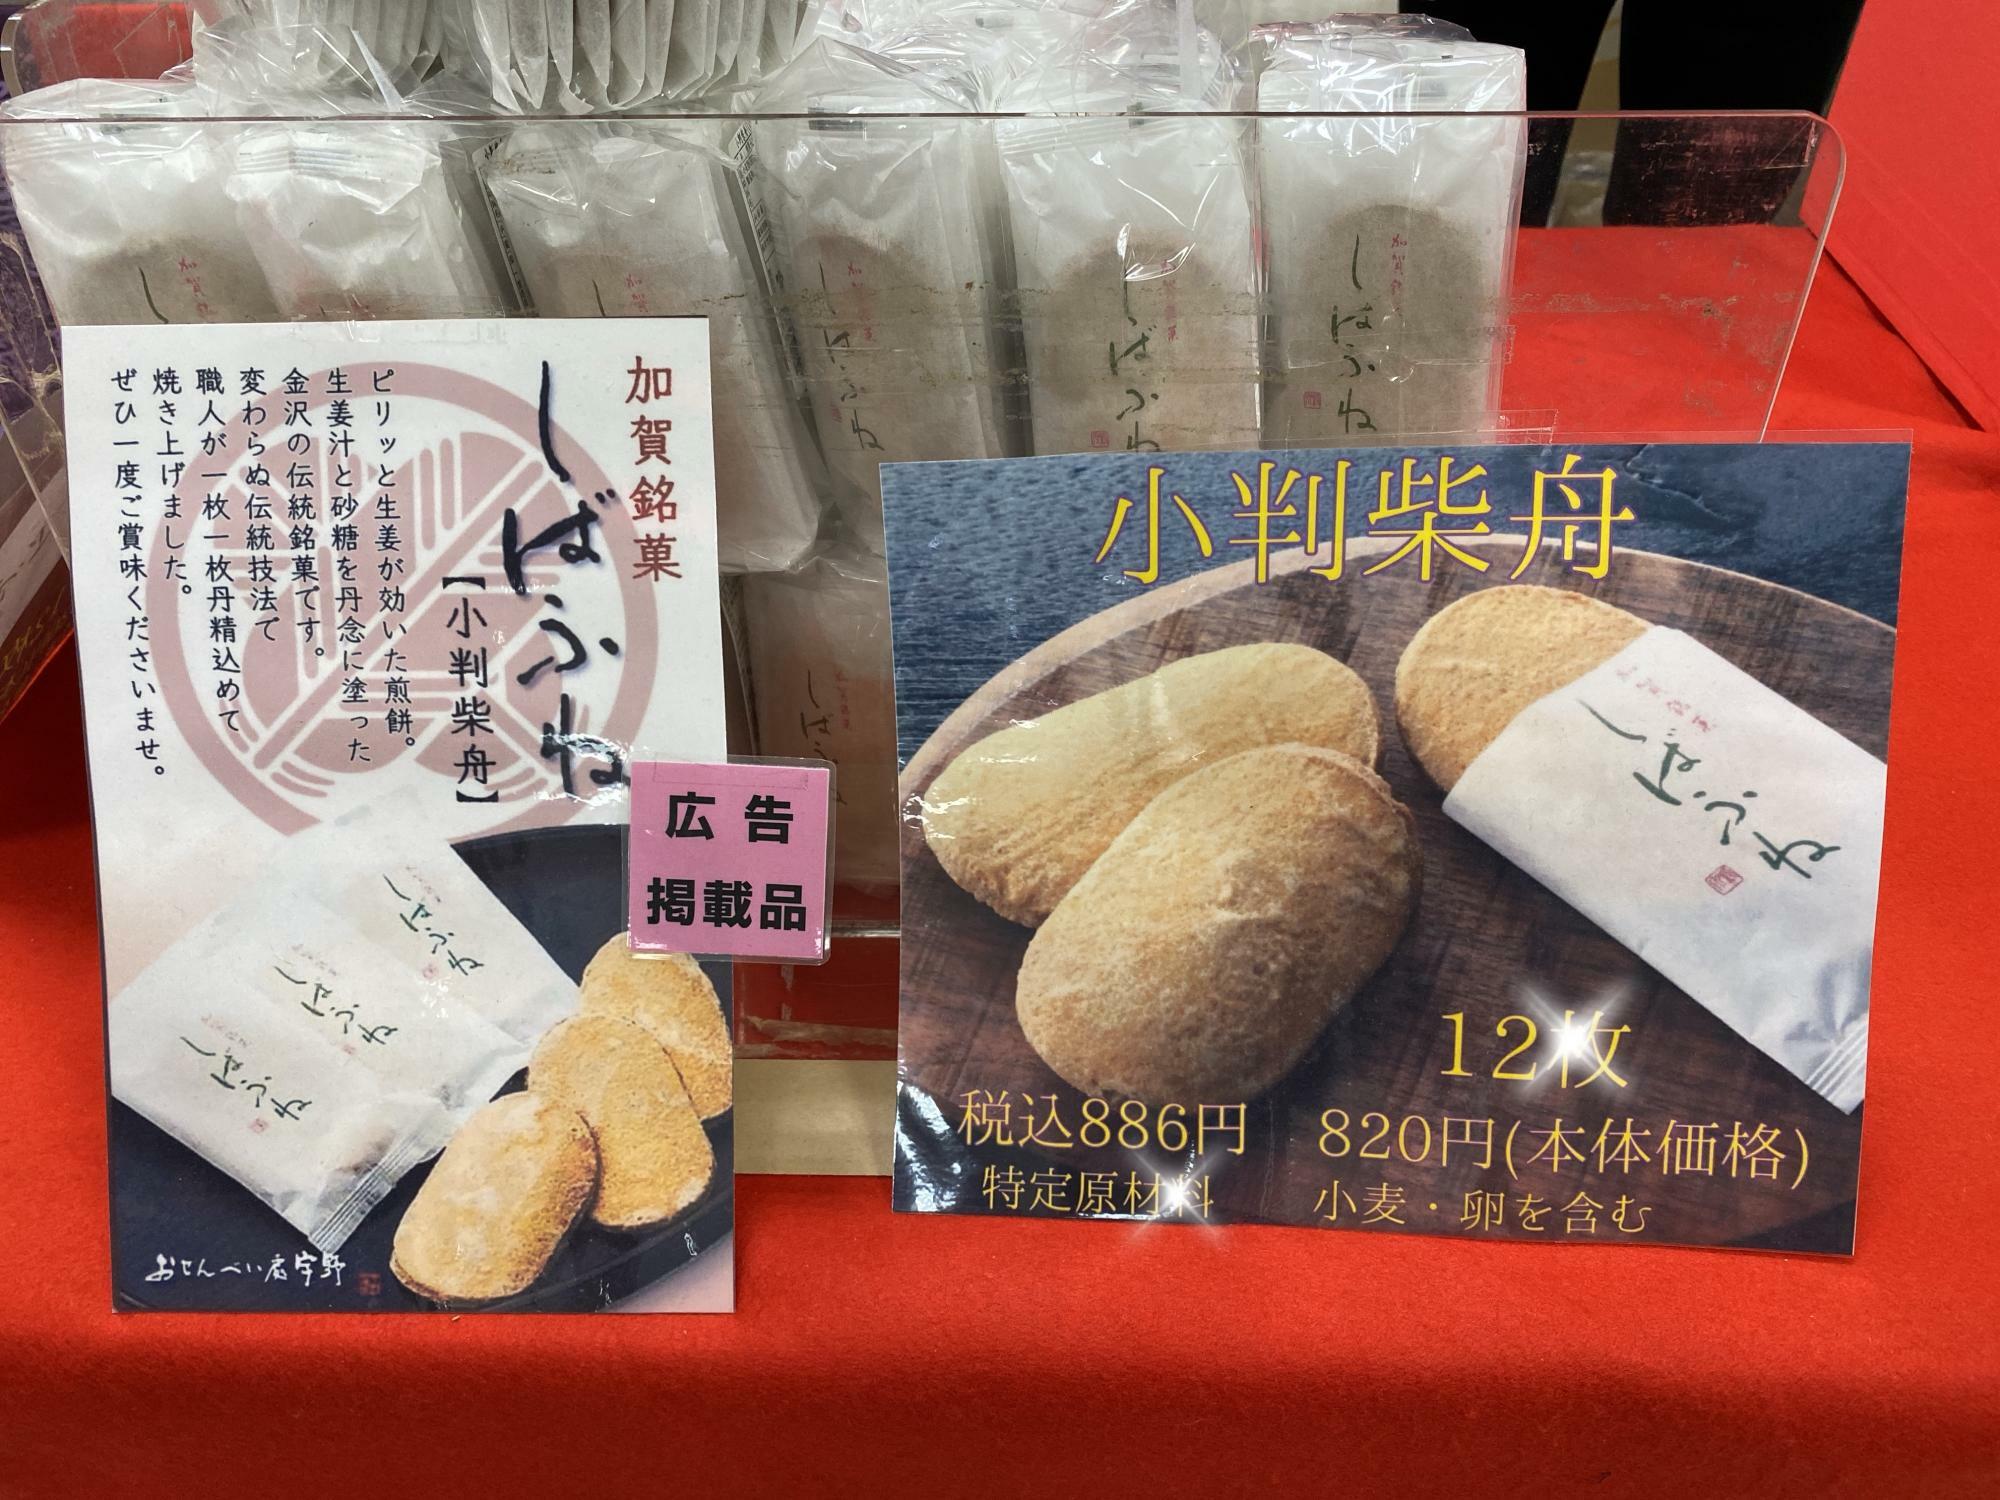 紫舟小出のお菓子は間違いなしの和菓子とも言われているそうです。